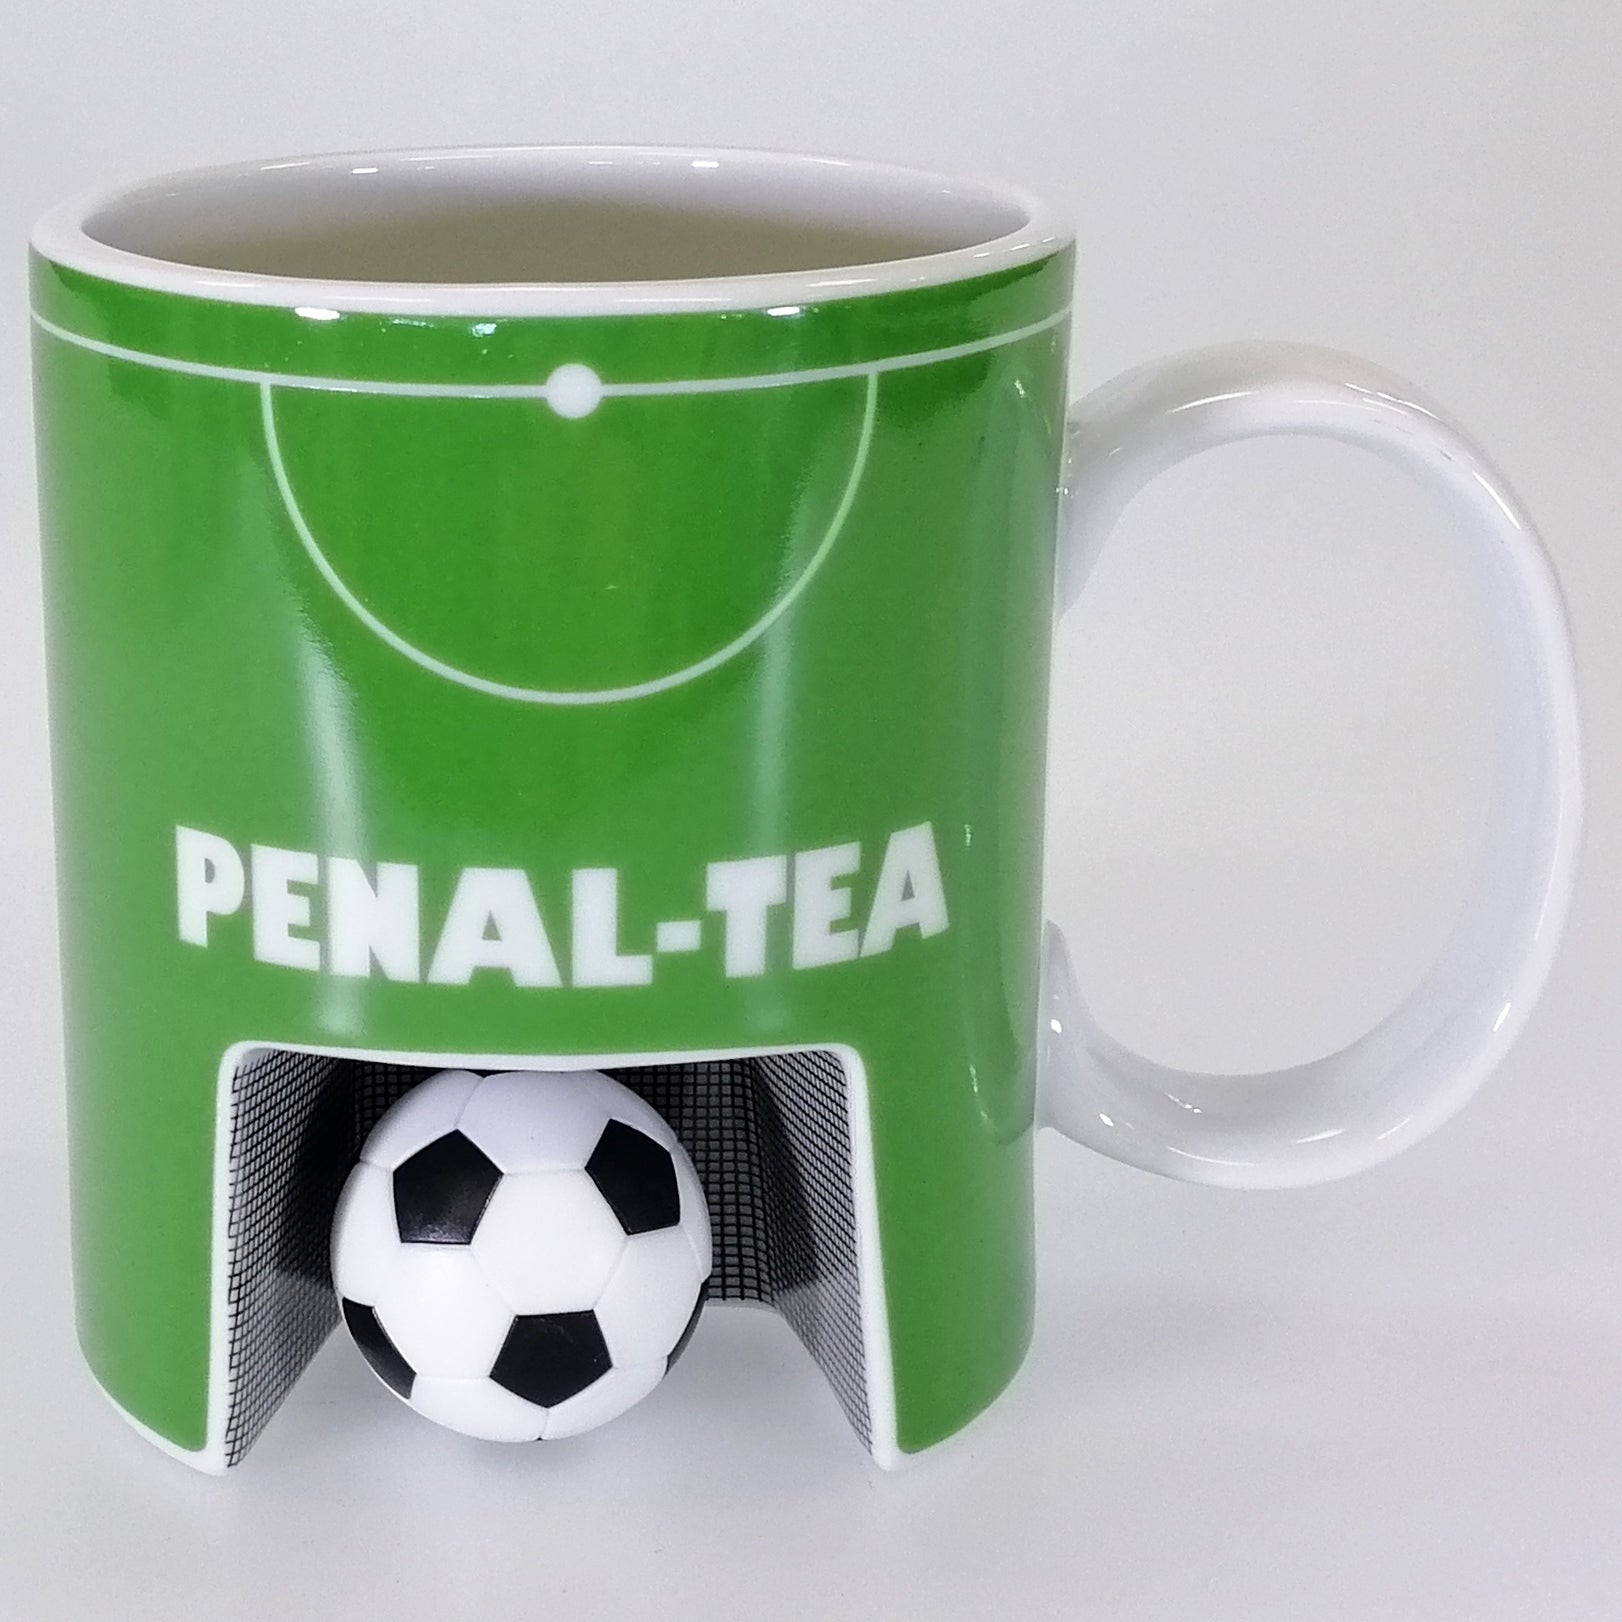 Penal-Tea Mug